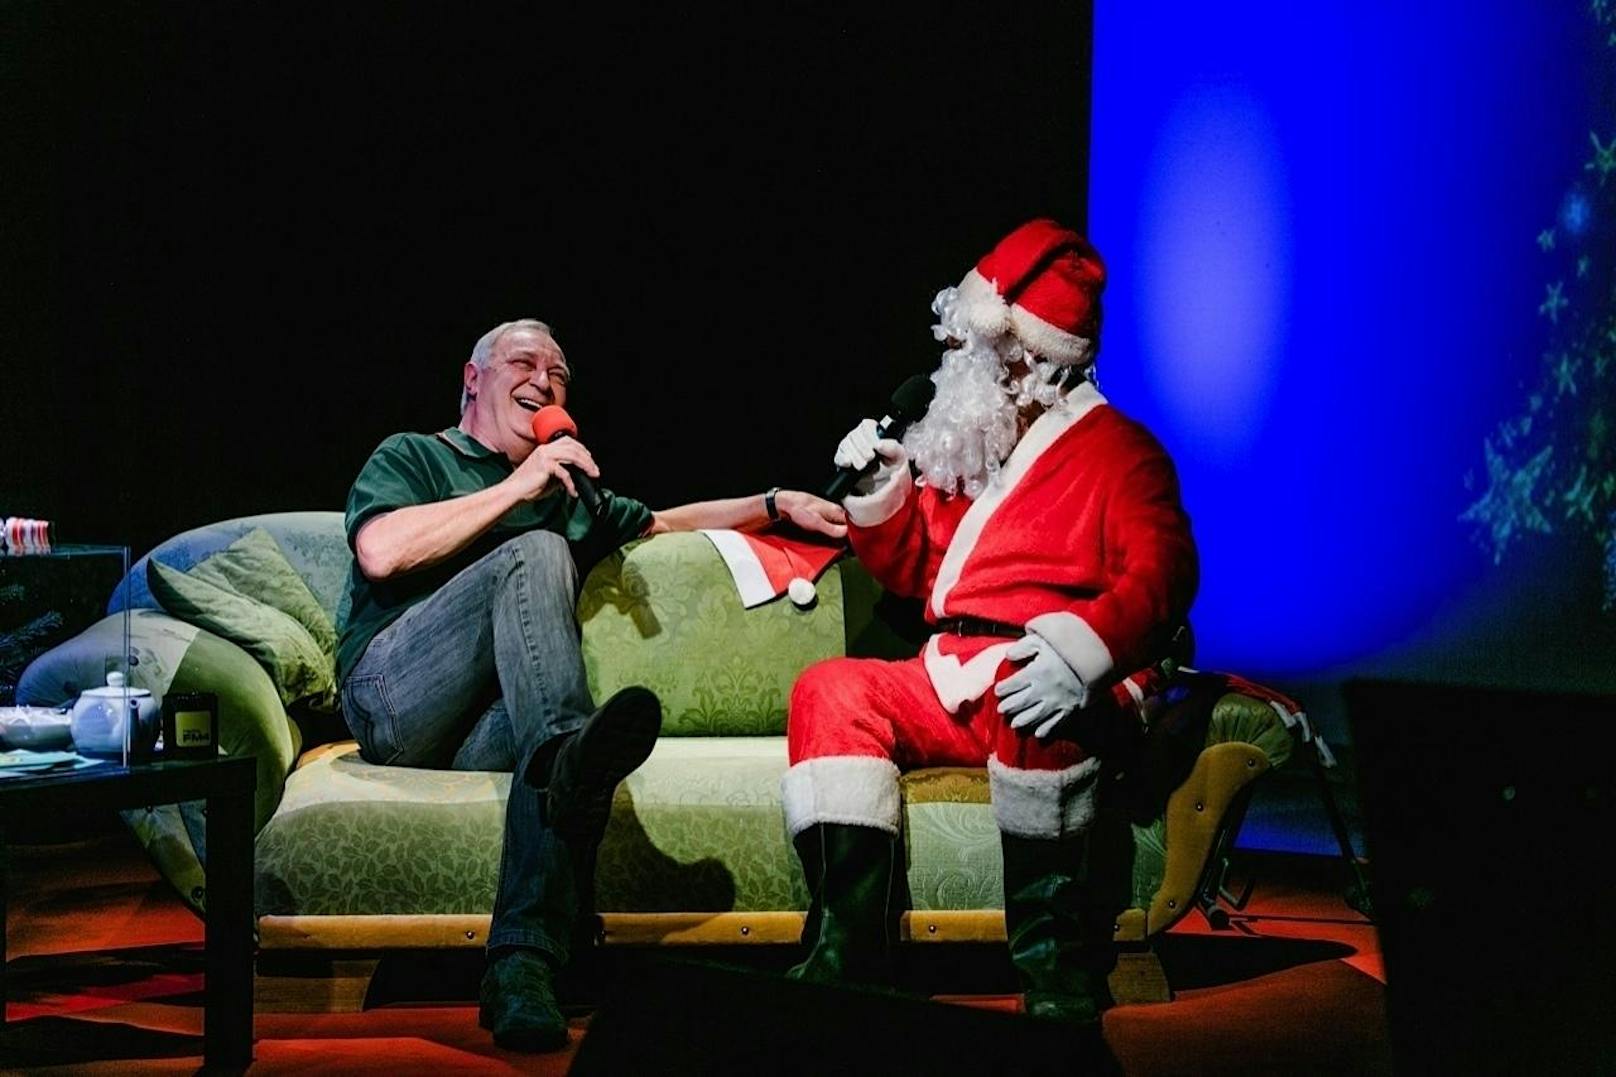 Das Stück nennt sich nicht umsonst Christmas Special: Der abgebildete Mann heißt allerdings nicht Santa Claus, sondern echt British Father Christmas
 Fotocredit: Stuart Freeman